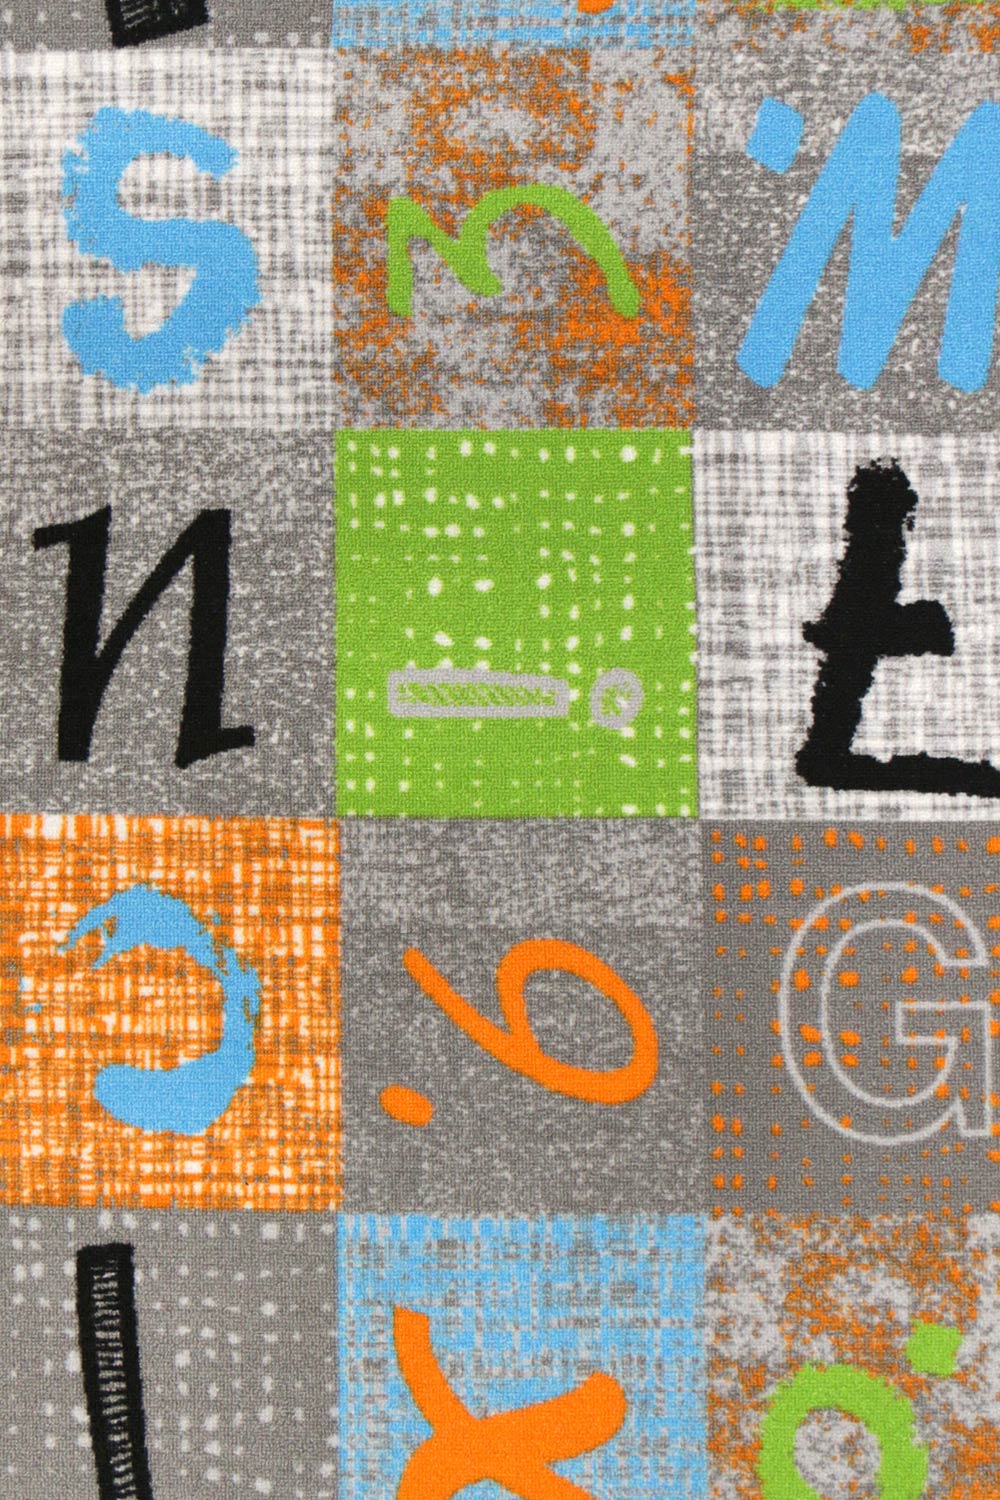 Detský metrážny koberec Alphabet 212 - Zvyšok 159x400 cm